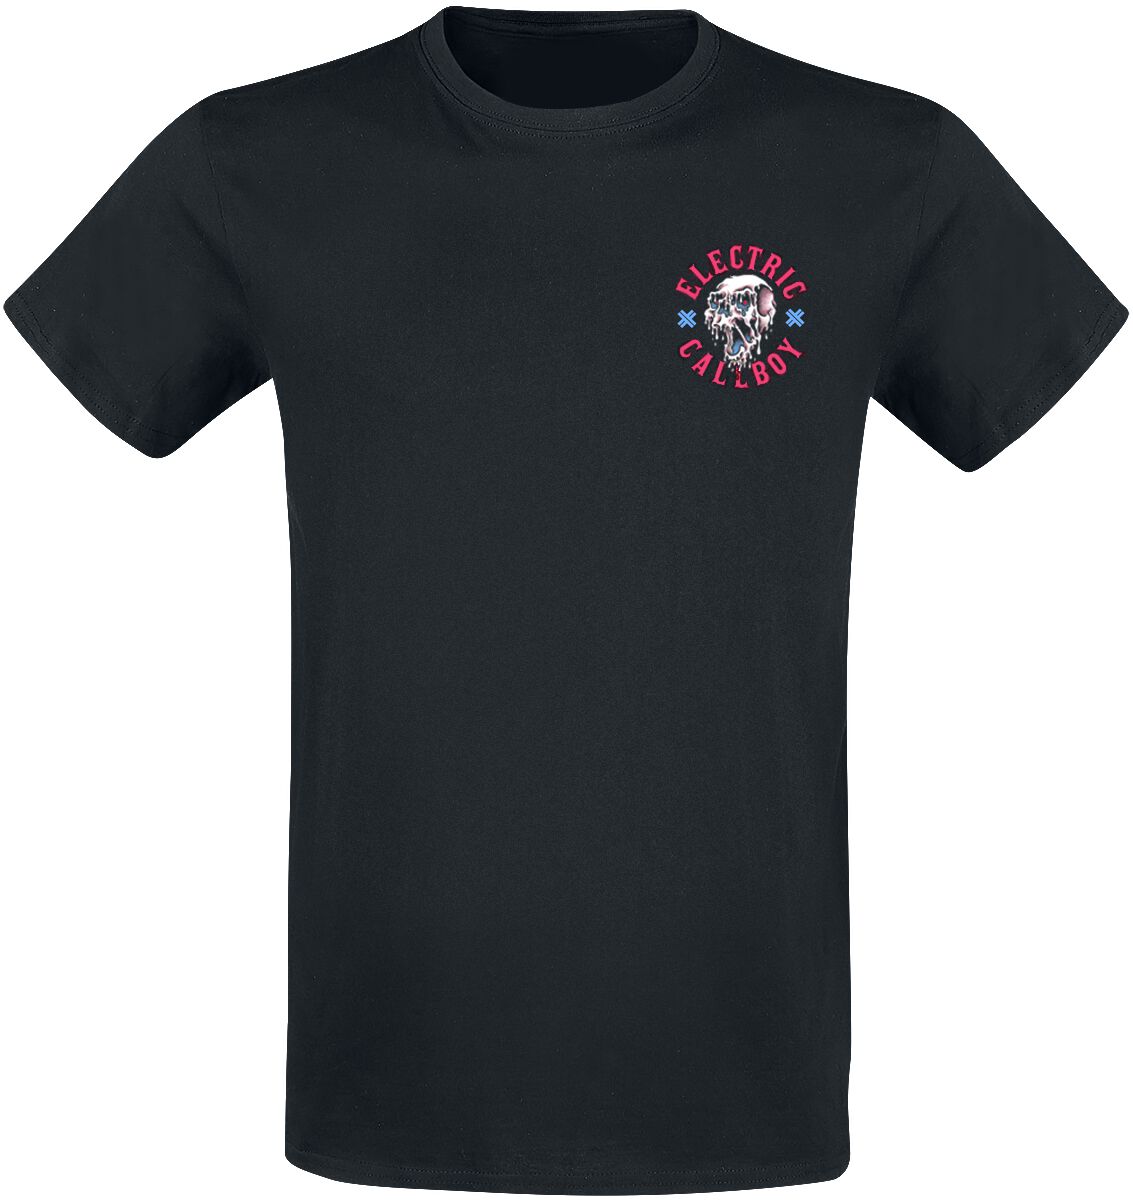 Electric Callboy T-Shirt - Let`s Do It Again - S bis 3XL - für Männer - Größe S - schwarz  - Lizenziertes Merchandise!